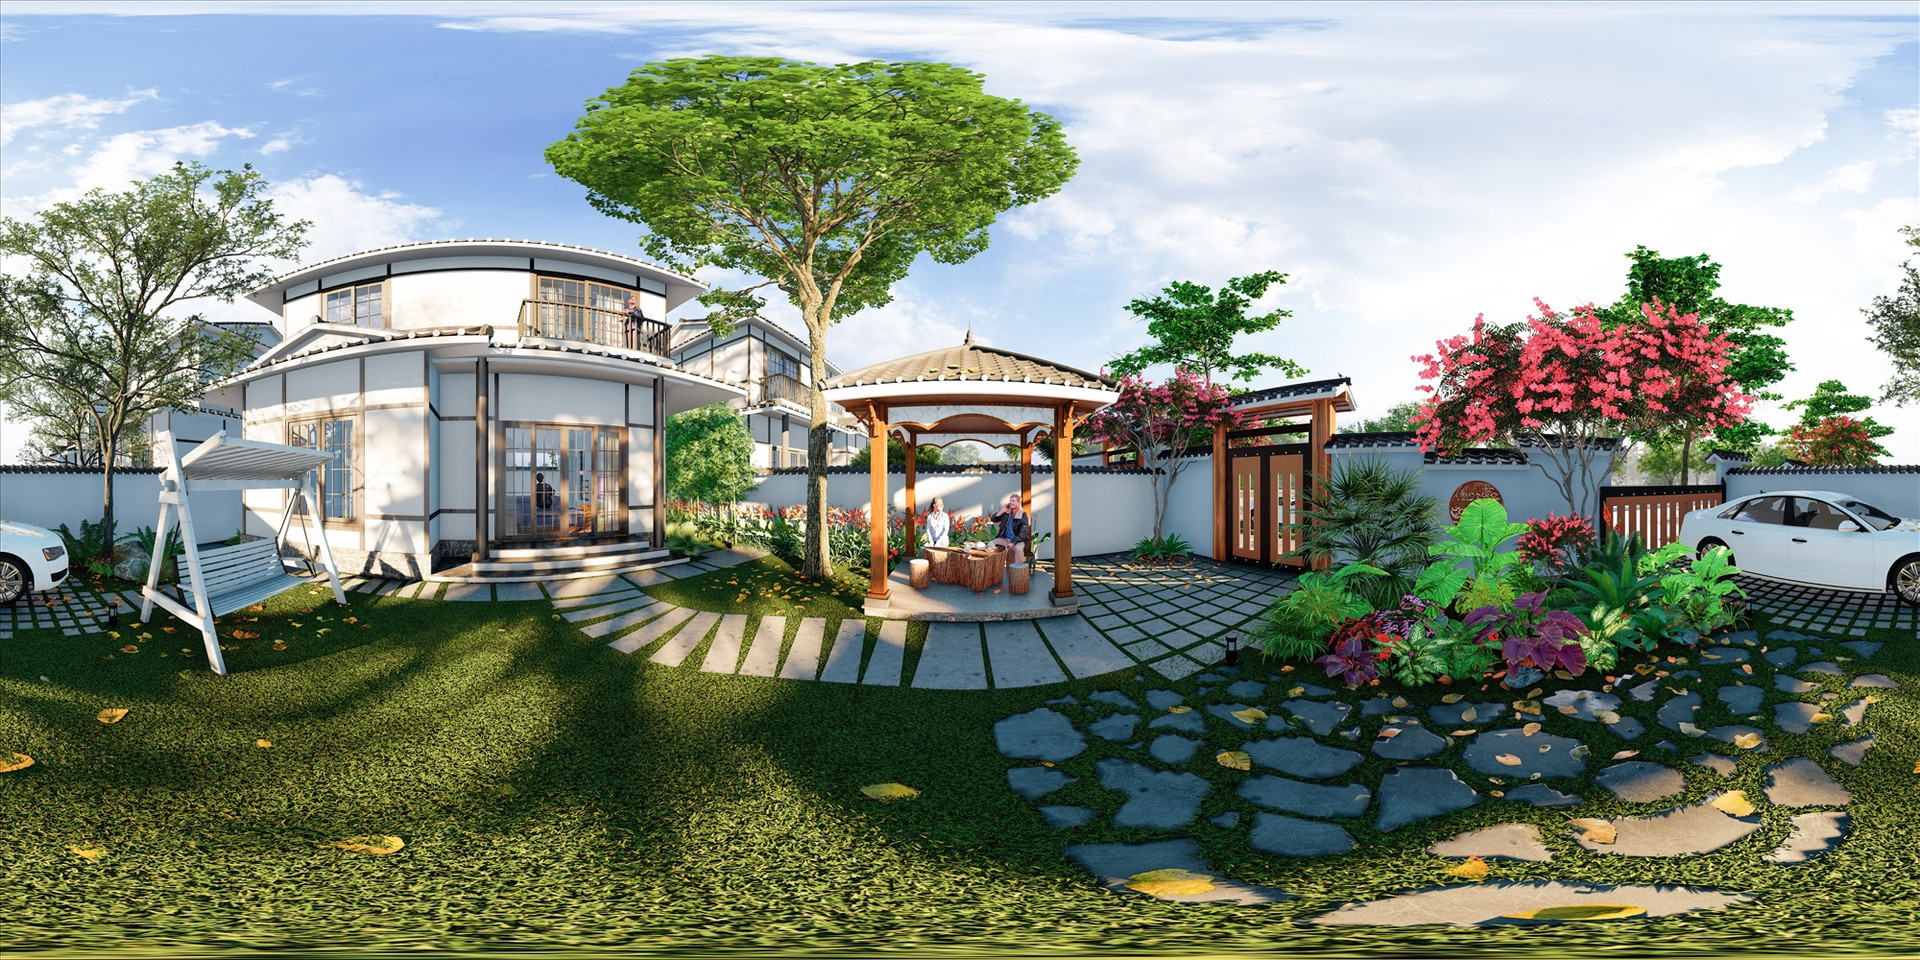 “Biệt thự Nhật Bản” hướng đến không gian xanh, với thiết kế phần sân vườn rộng rãi hướng đến tiêu chí sang trọng, thân thiện với định hướng đô thị sinh thái.